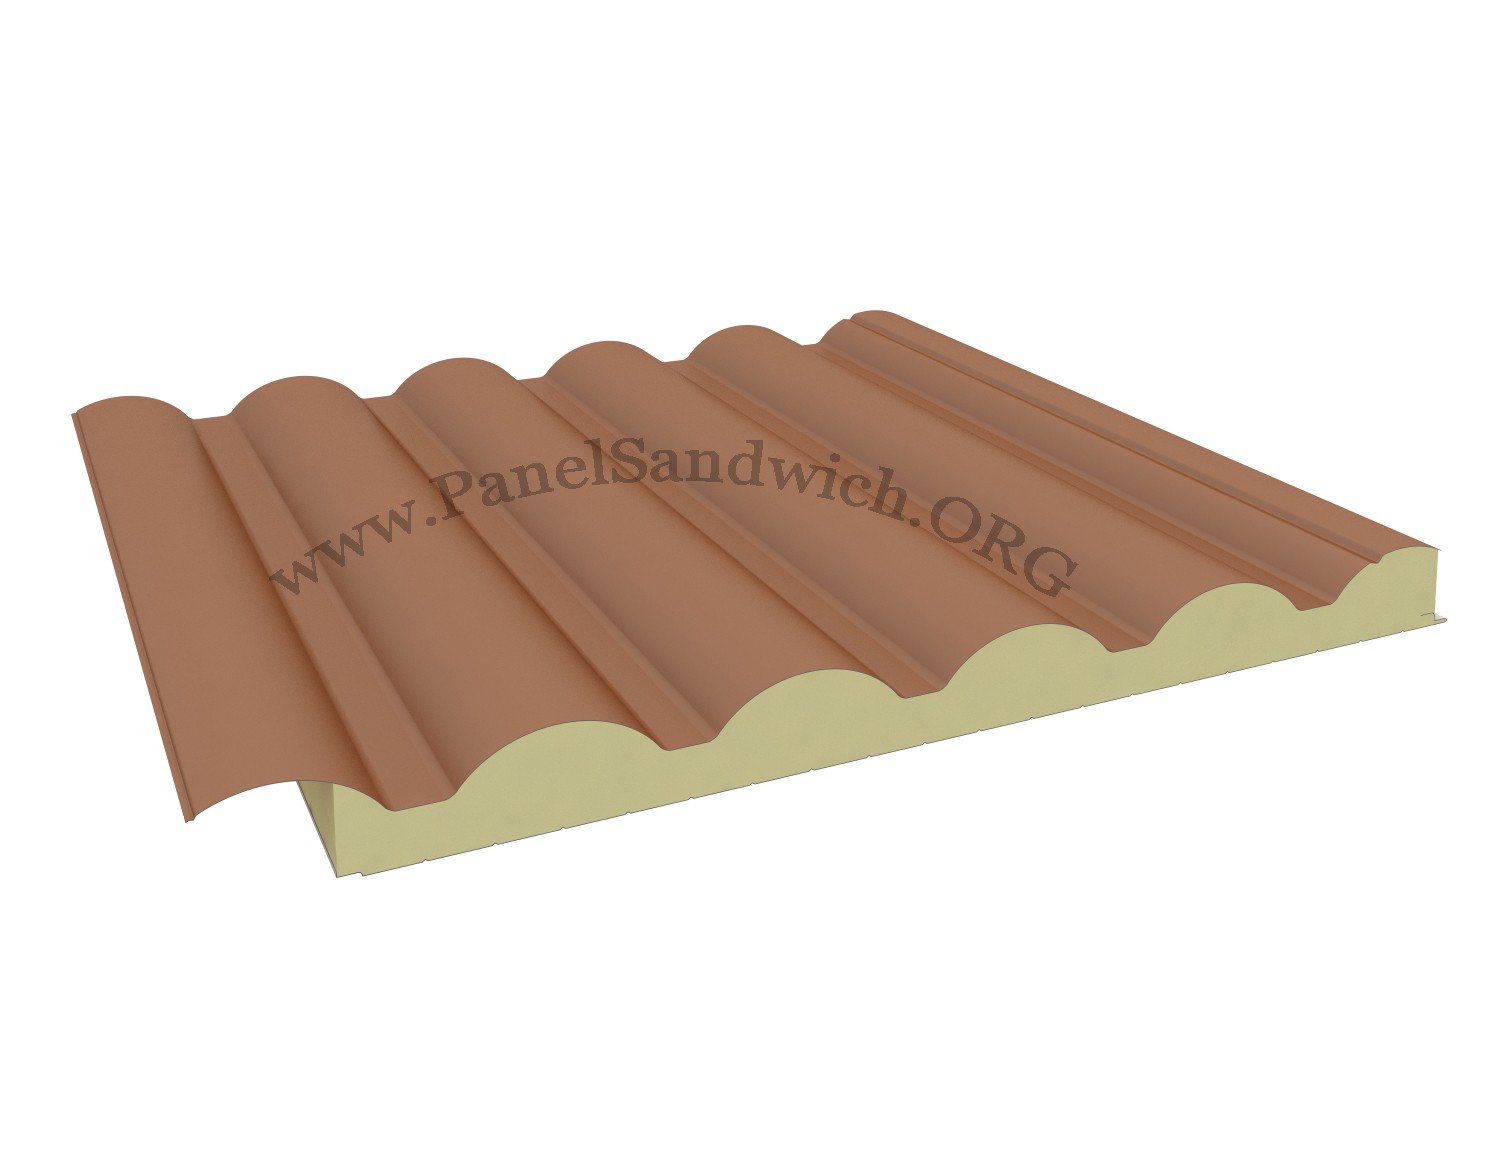 Agropanel Sandwich Panel - Roof Tile Shape